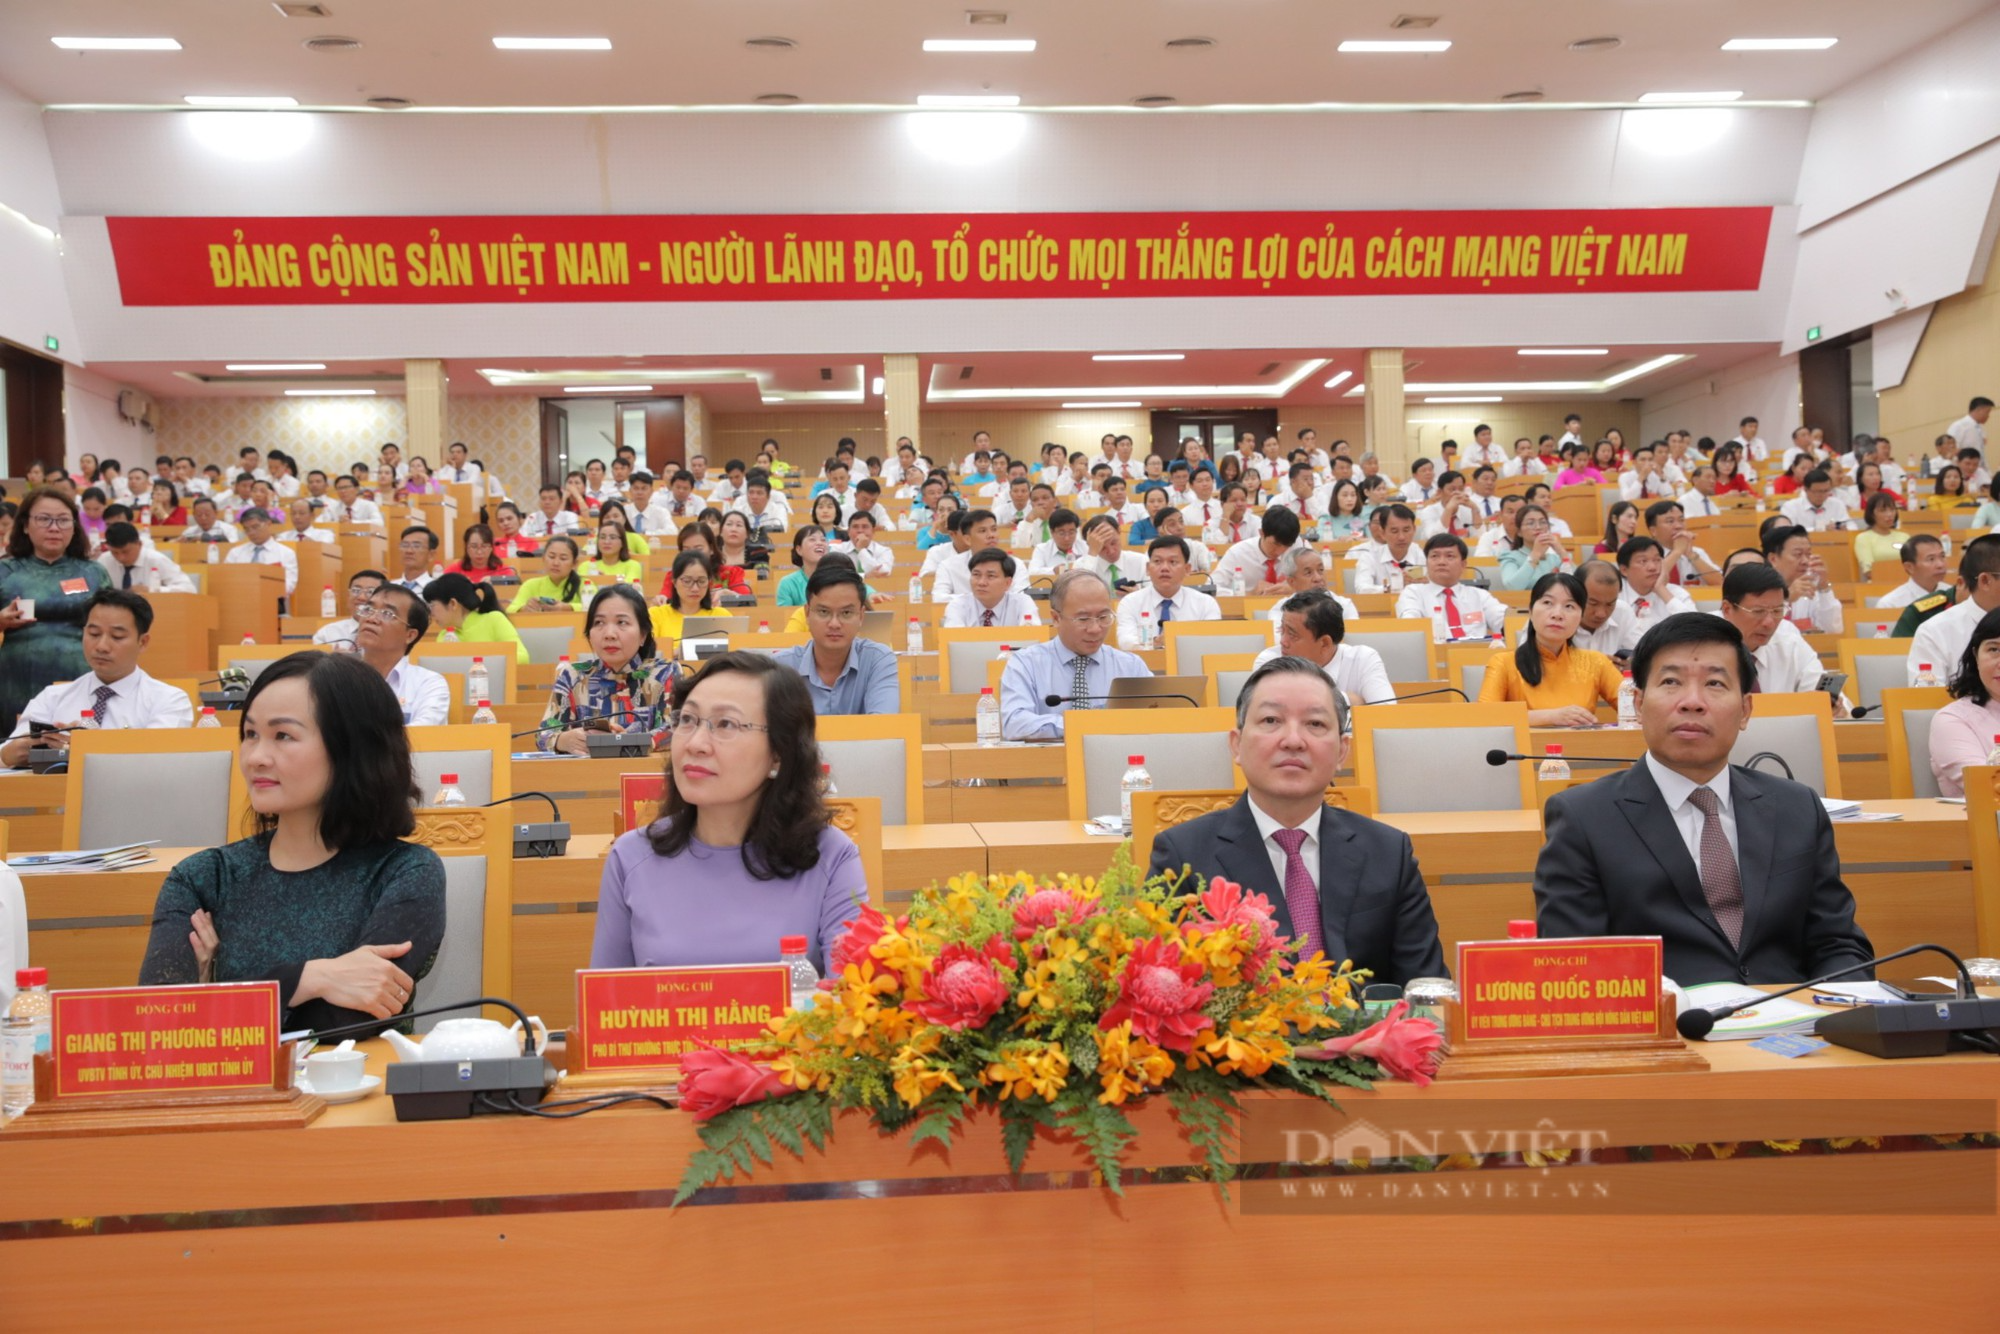 Chủ tịch Trung ương Hội Nông dân Việt Nam Lương Quốc Đoàn gợi mở 6 vấn đề giúp phát triển đời sống nông dân - Ảnh 2.